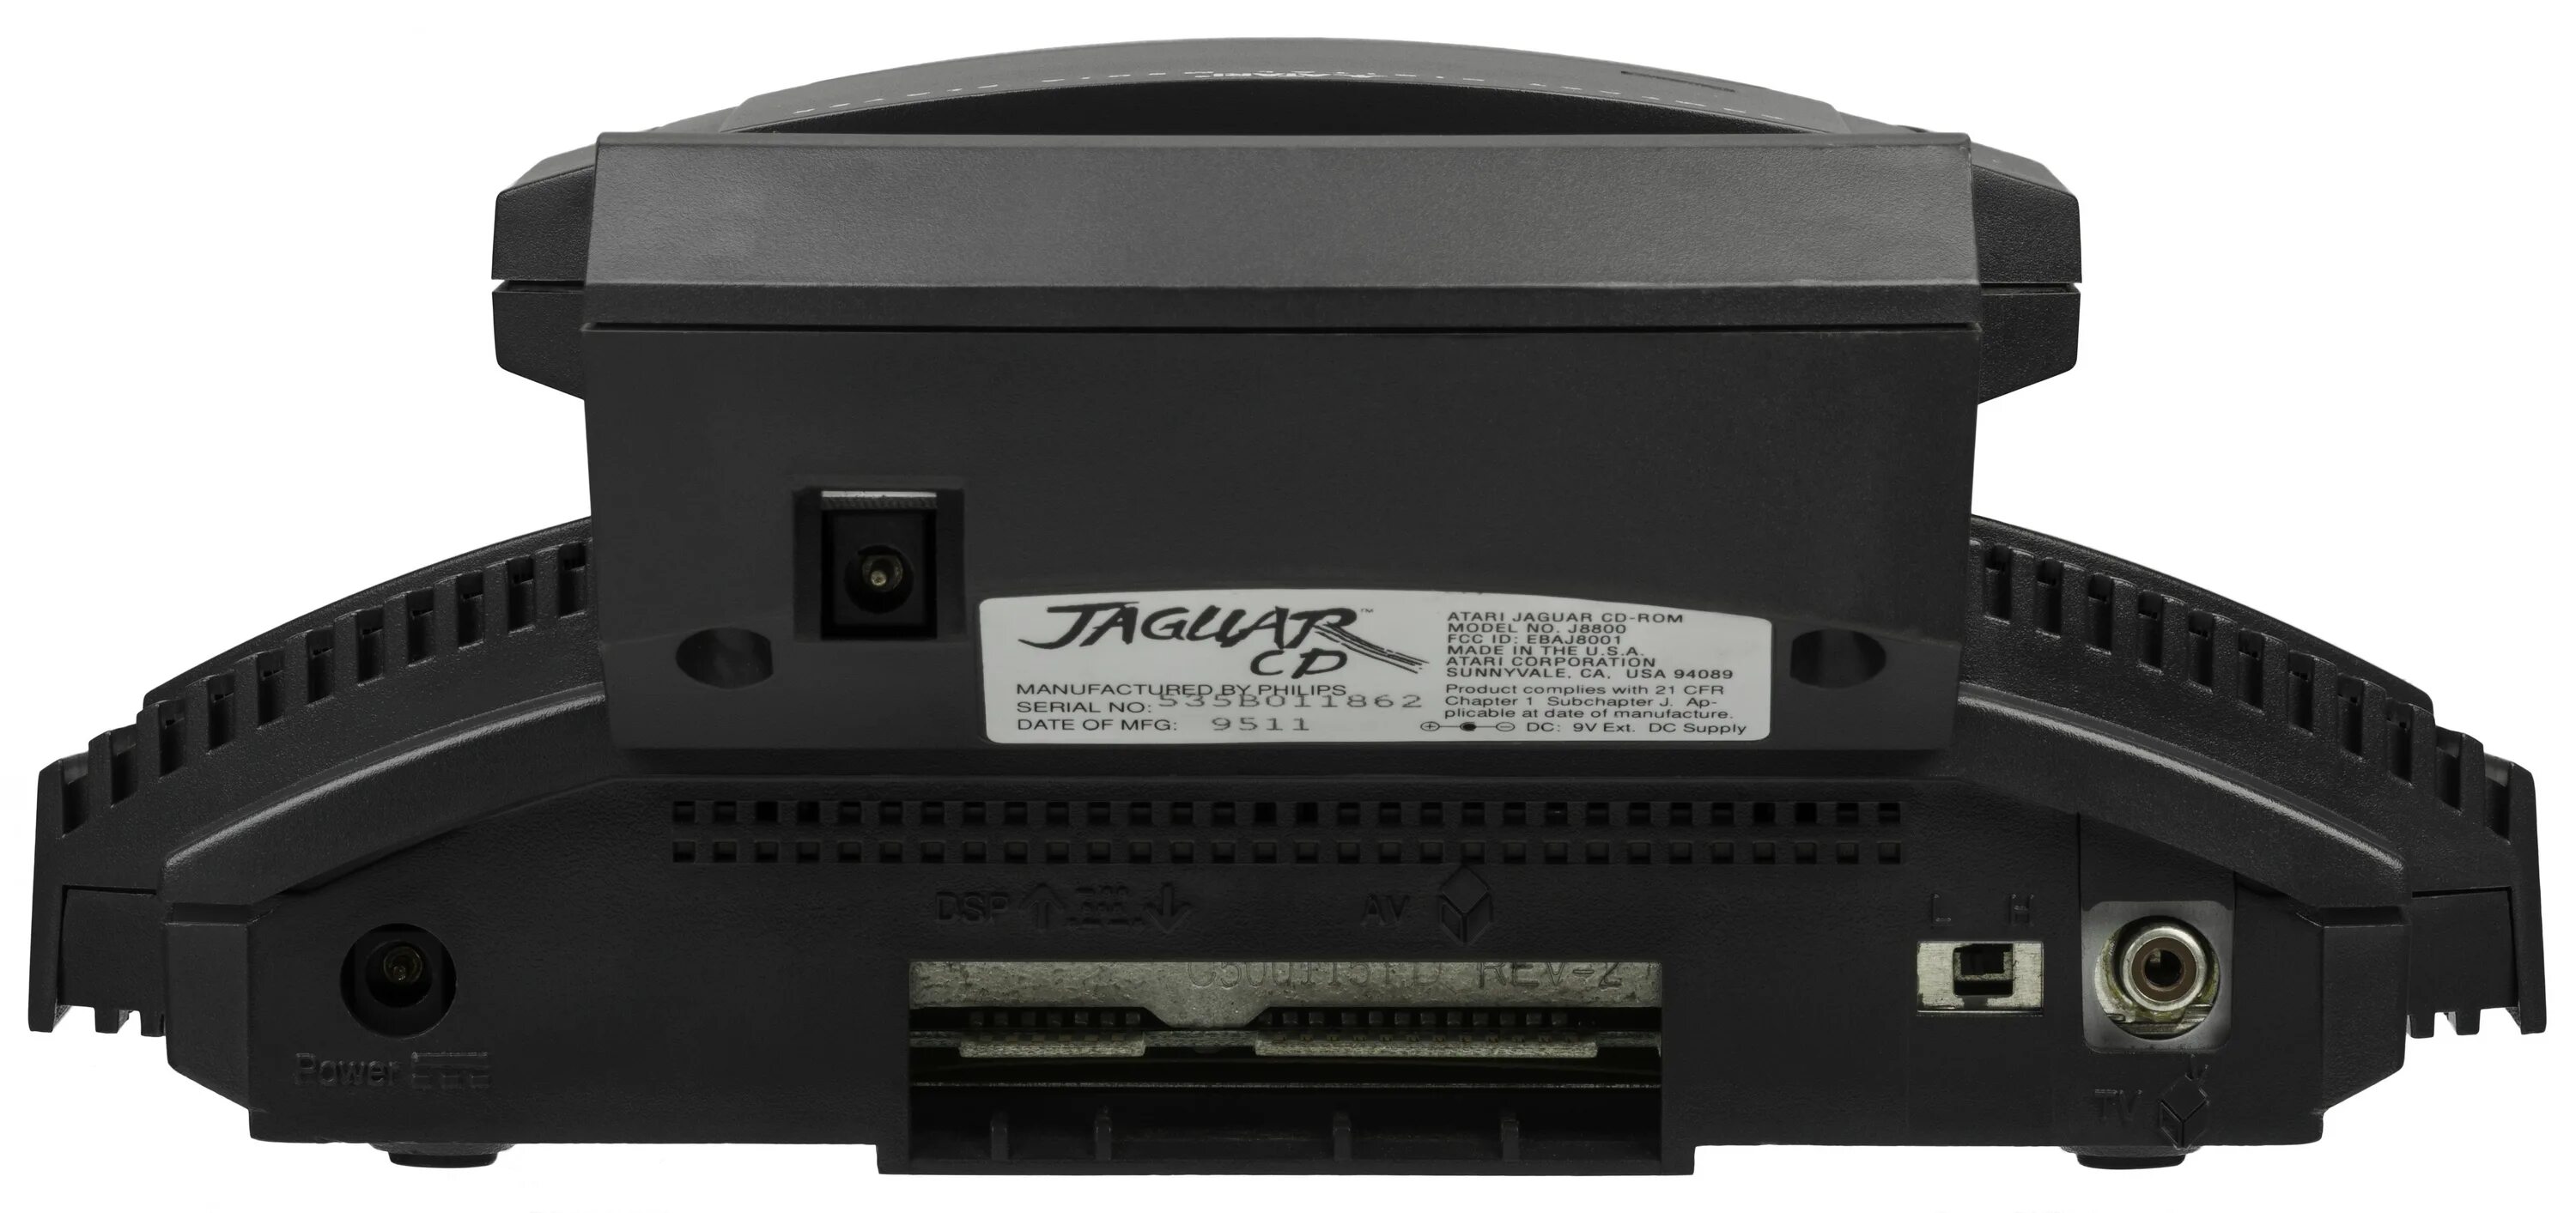 Atari jaguar. Атари Jaguar. Atari Jaguar CD. Игры на Atari Jaguar CD. Atari Jaguar Duo.